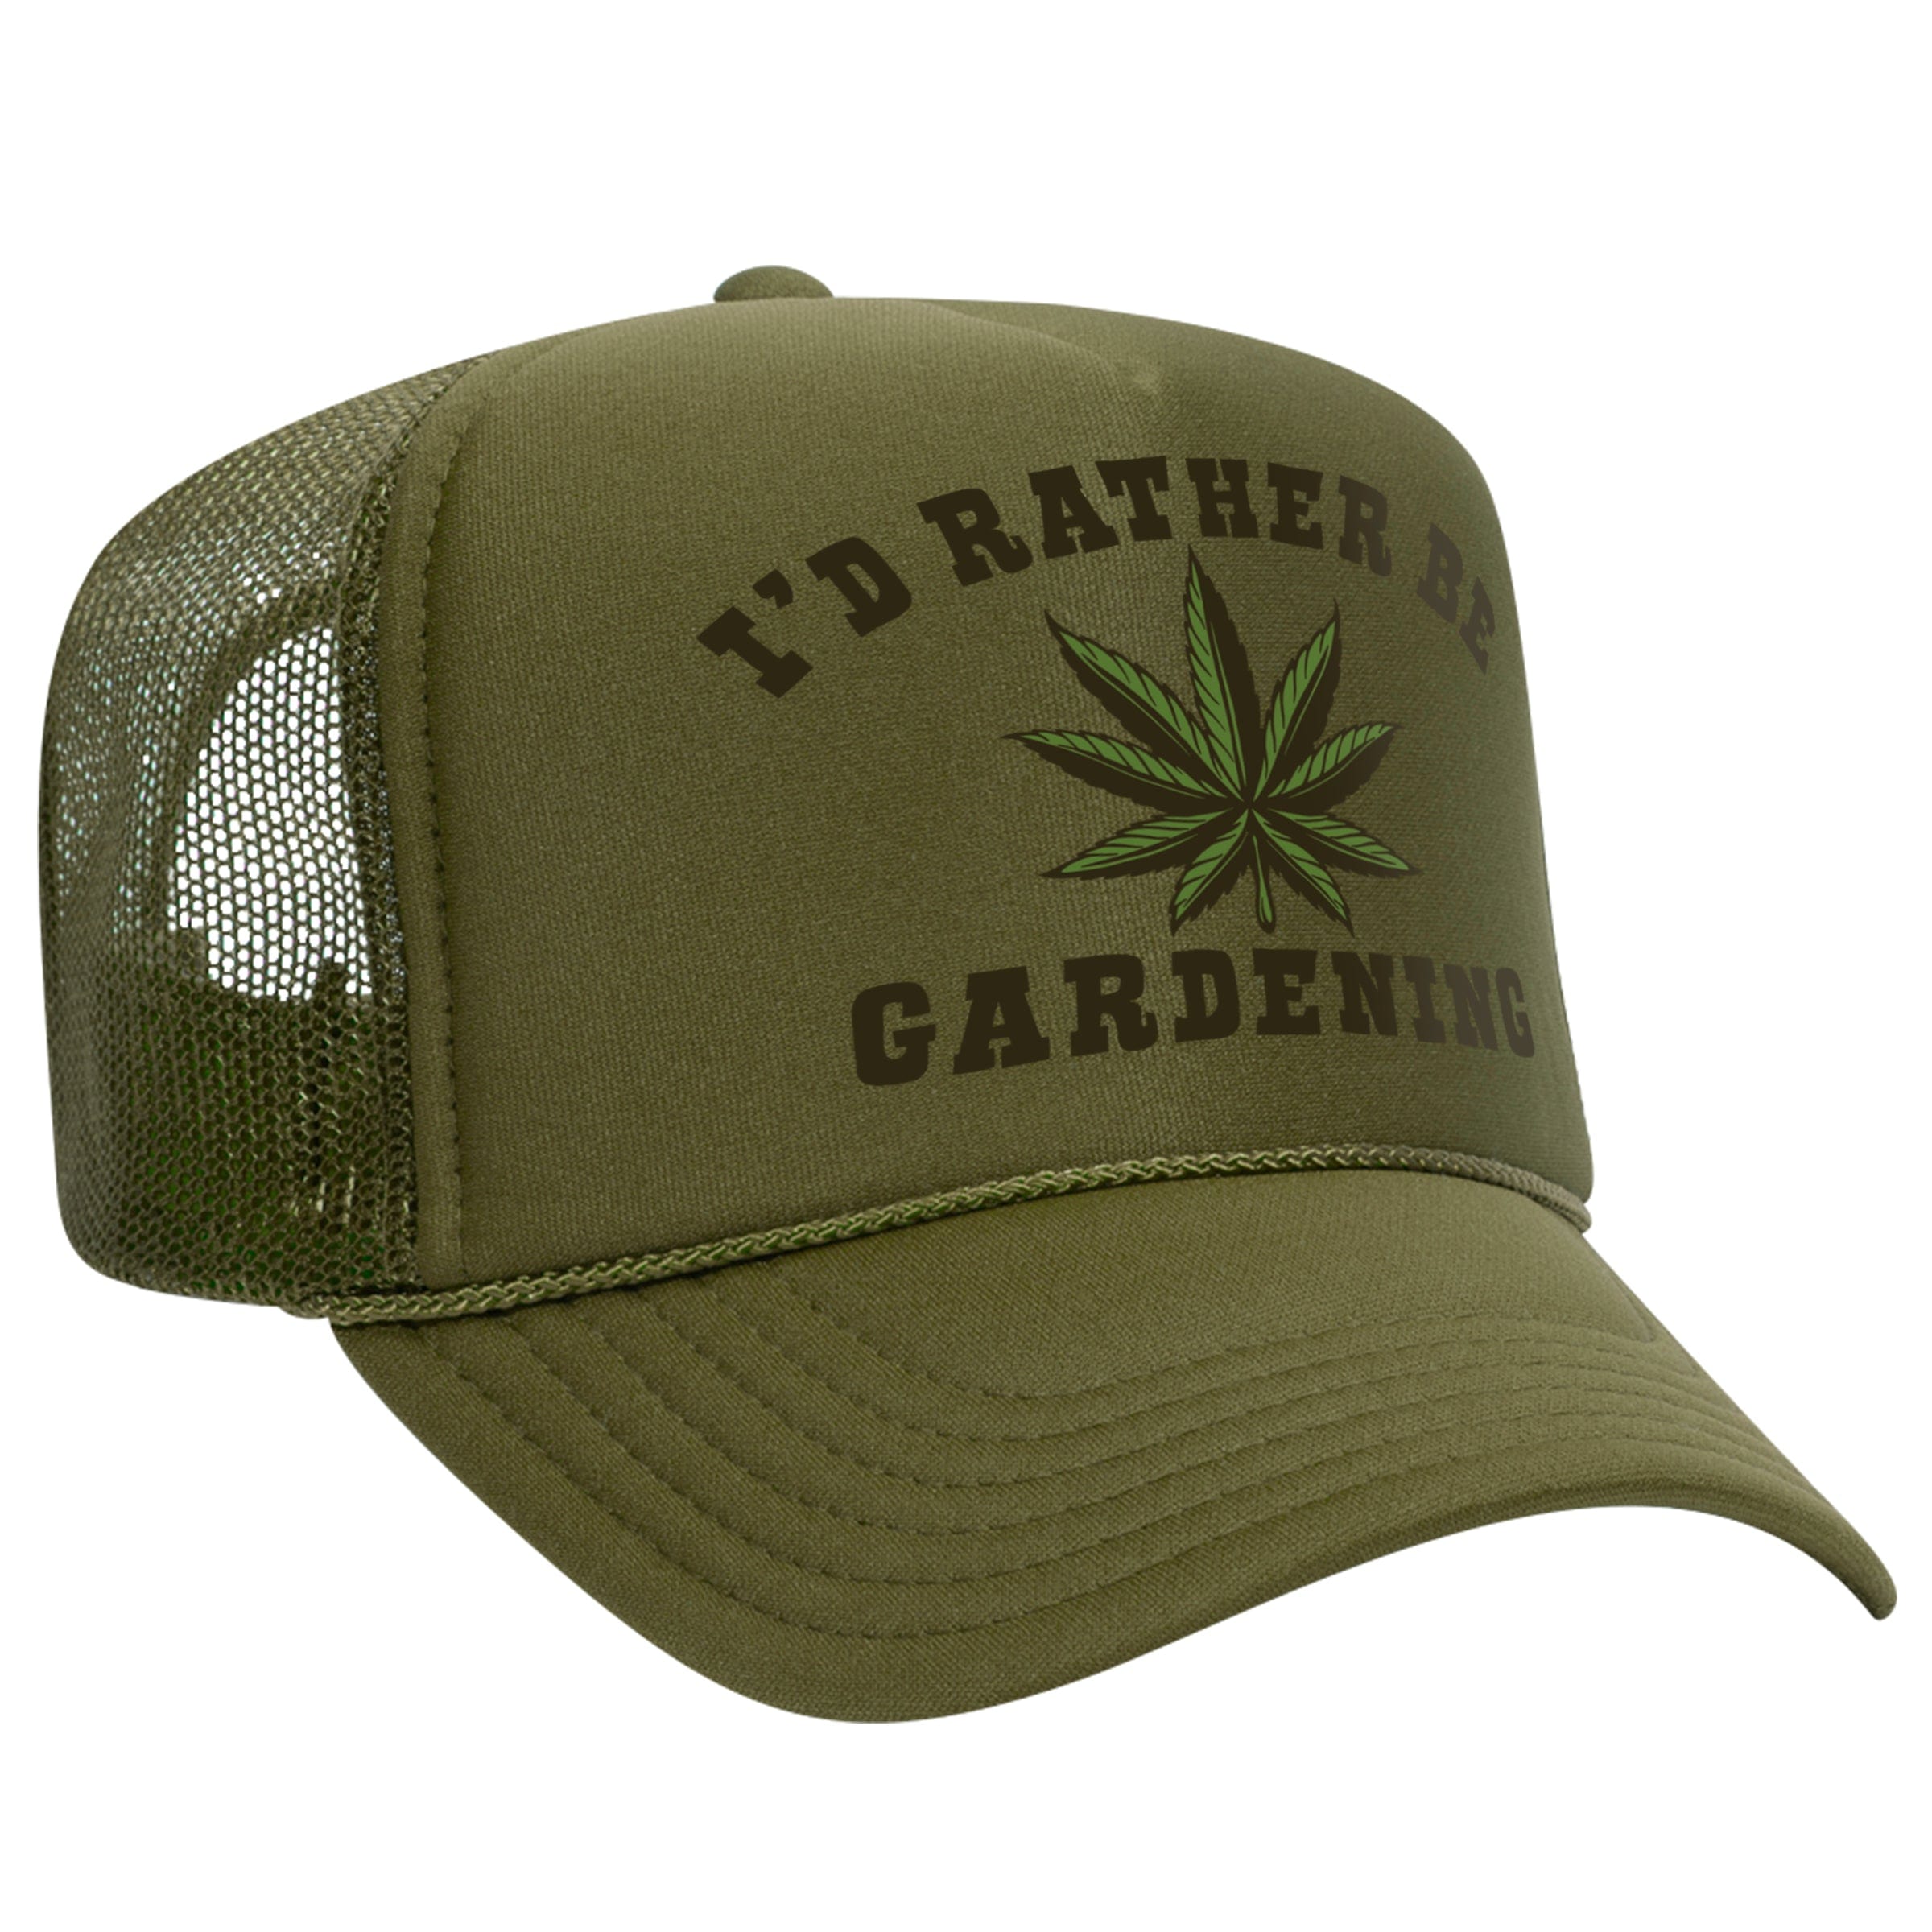 'GARDENING' TRUCKER HAT